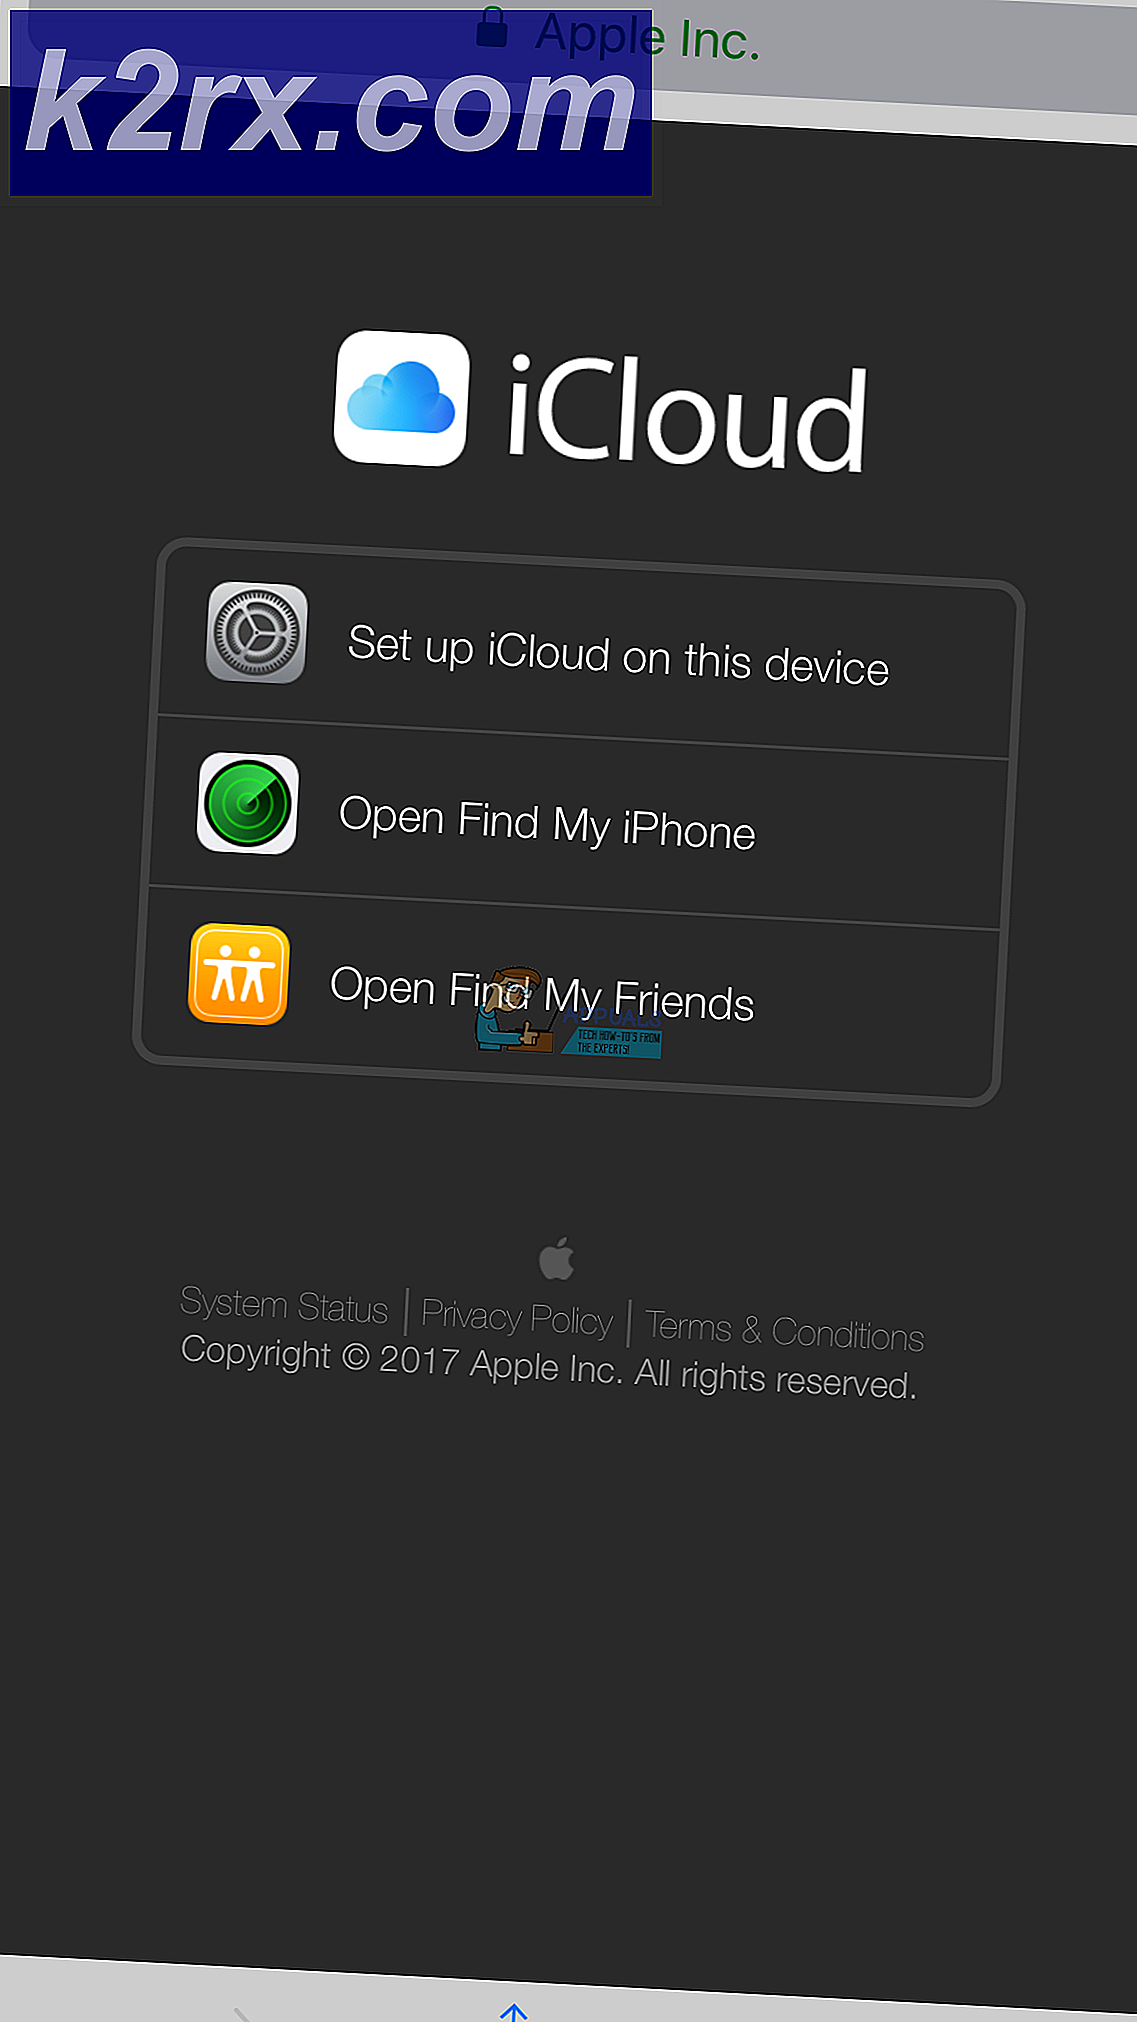 Inloggen op iCloud.com Uw iPhone of iPad gebruiken